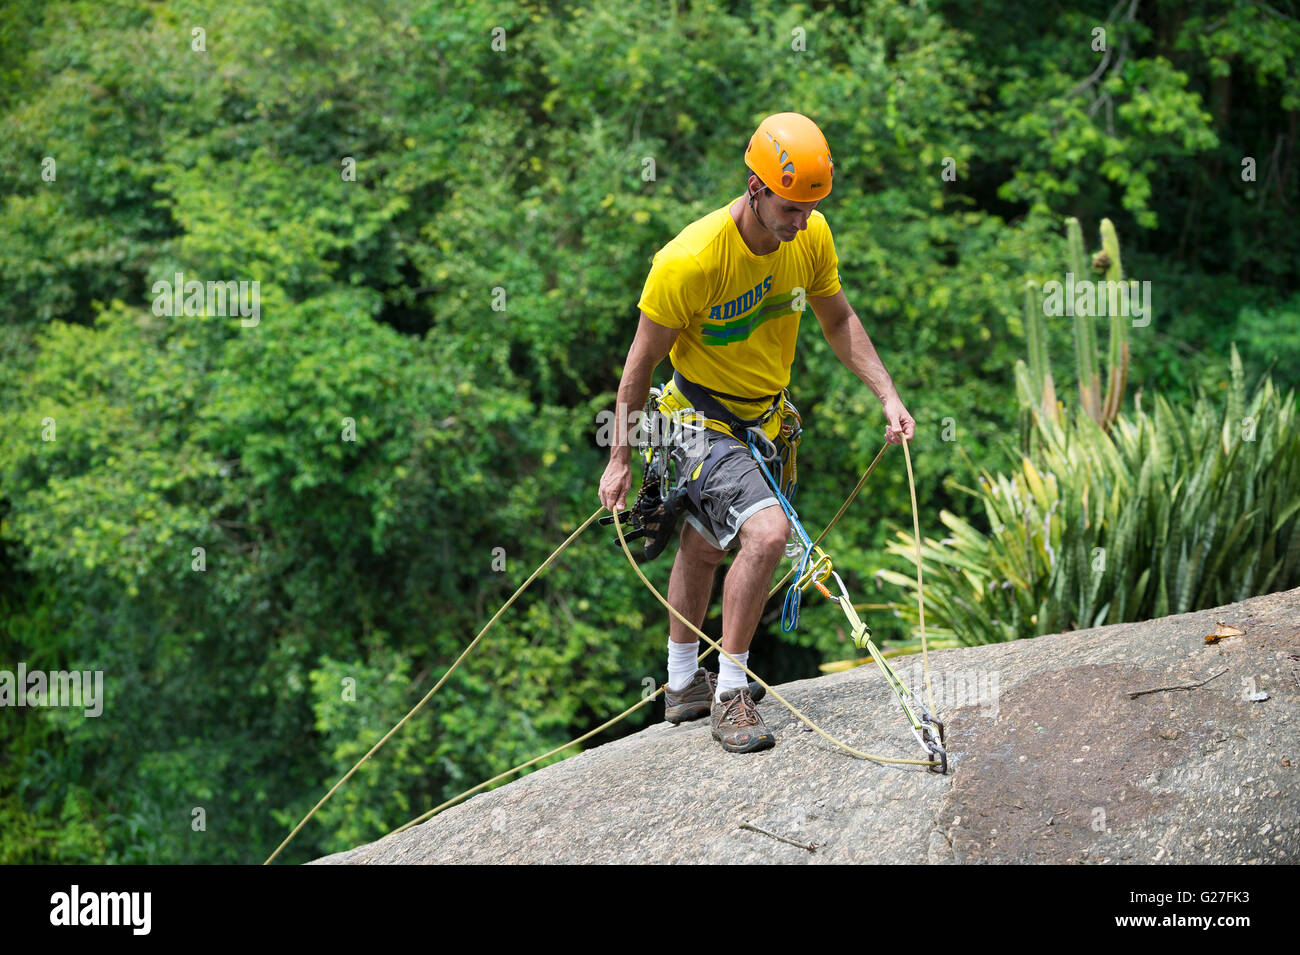 RIO DE JANEIRO - 5. März 2016: Ein Kletterer steht mit Sicherheitsseile bereit, den Morro da Urca am Zuckerhut Abstieg Stockfoto